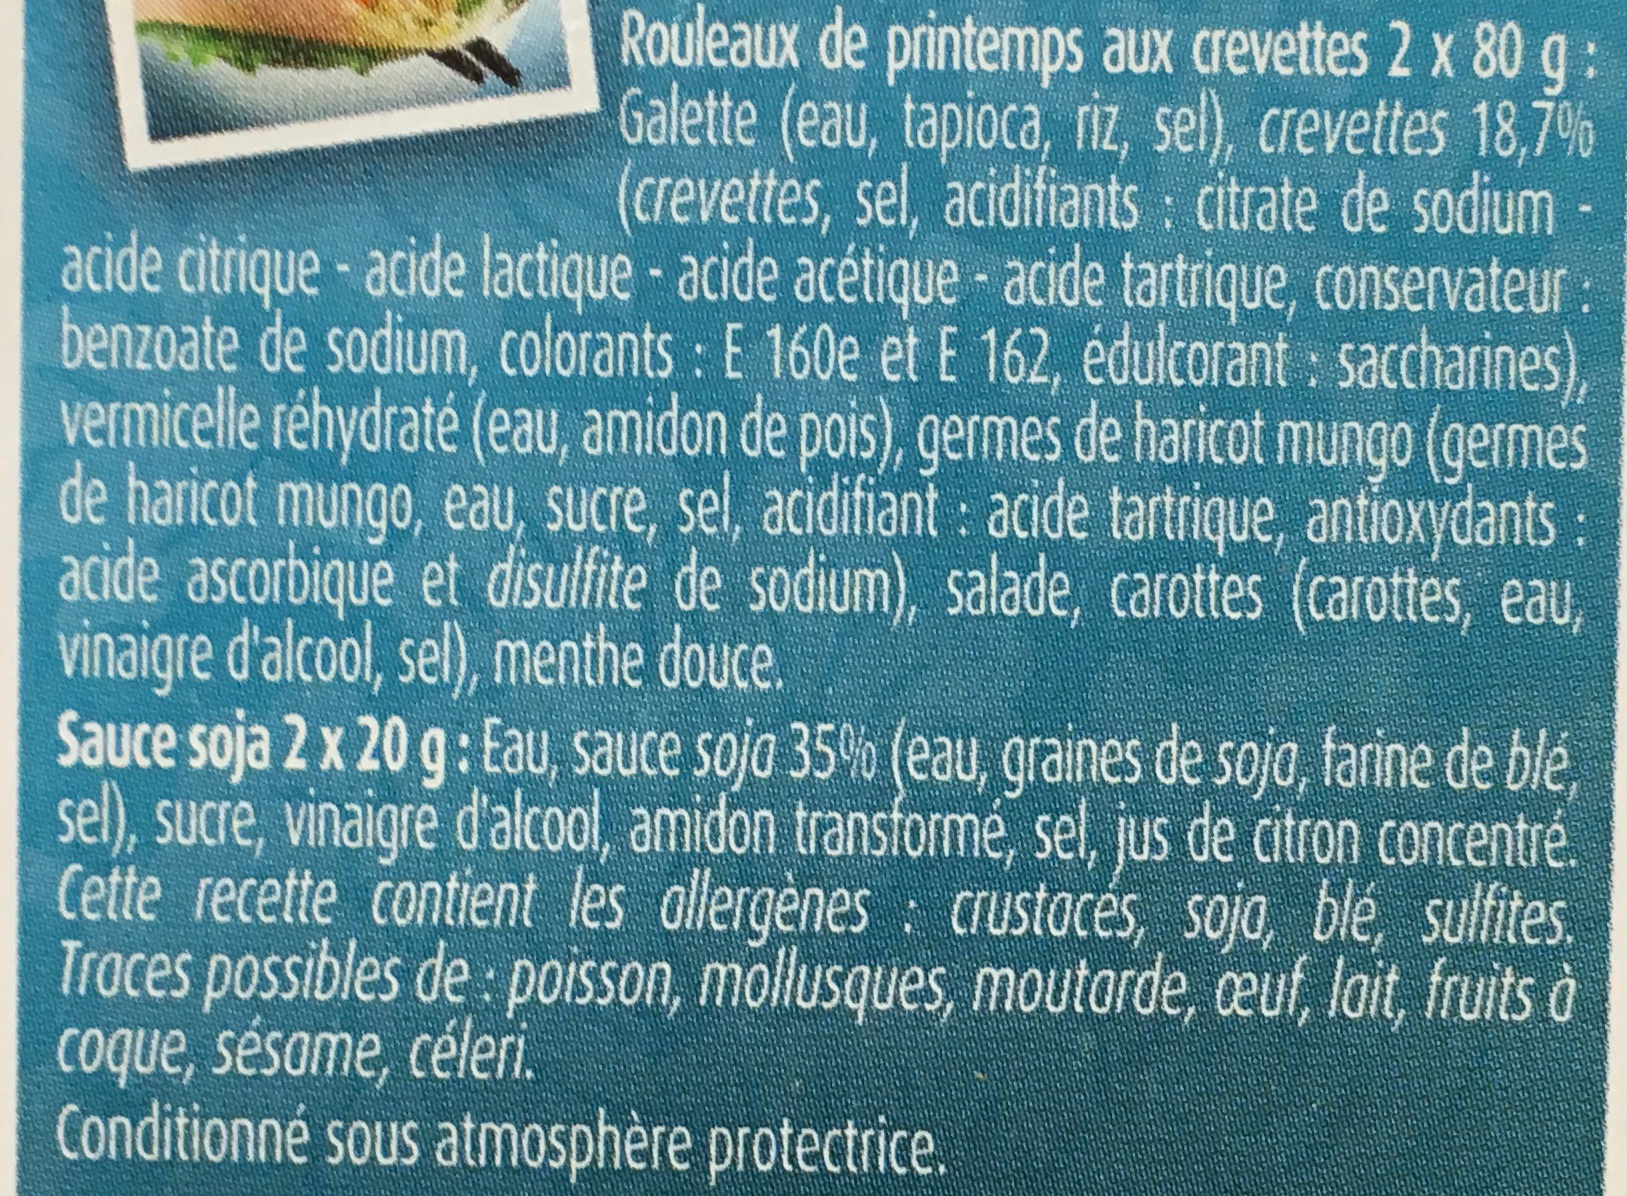 2 rouleaux de printemps crevette sauce soja - المكونات - fr